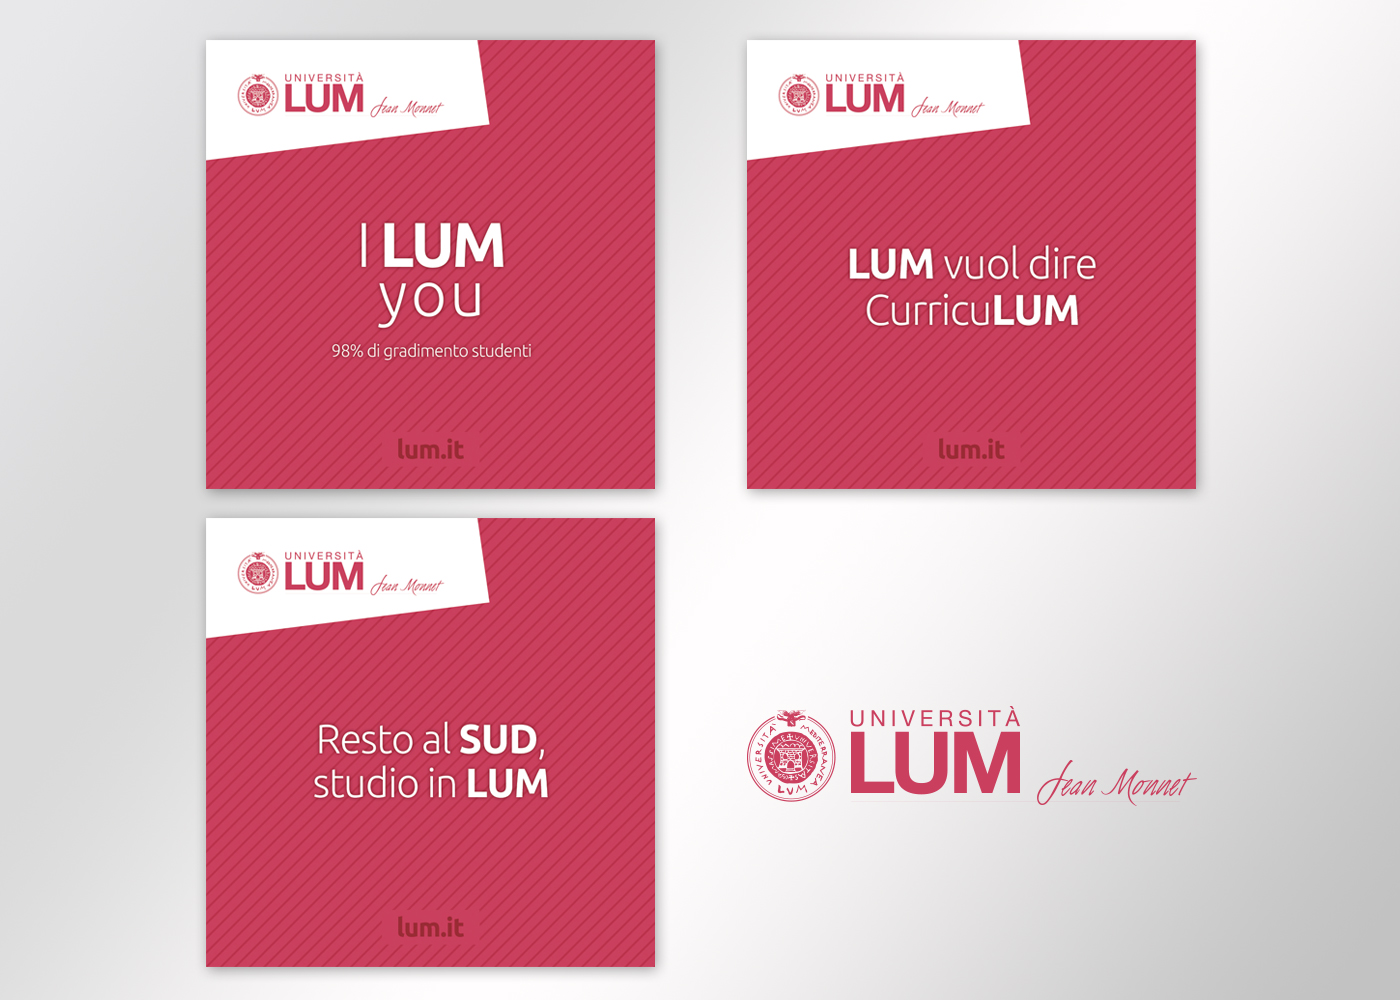 Lum social media marketing